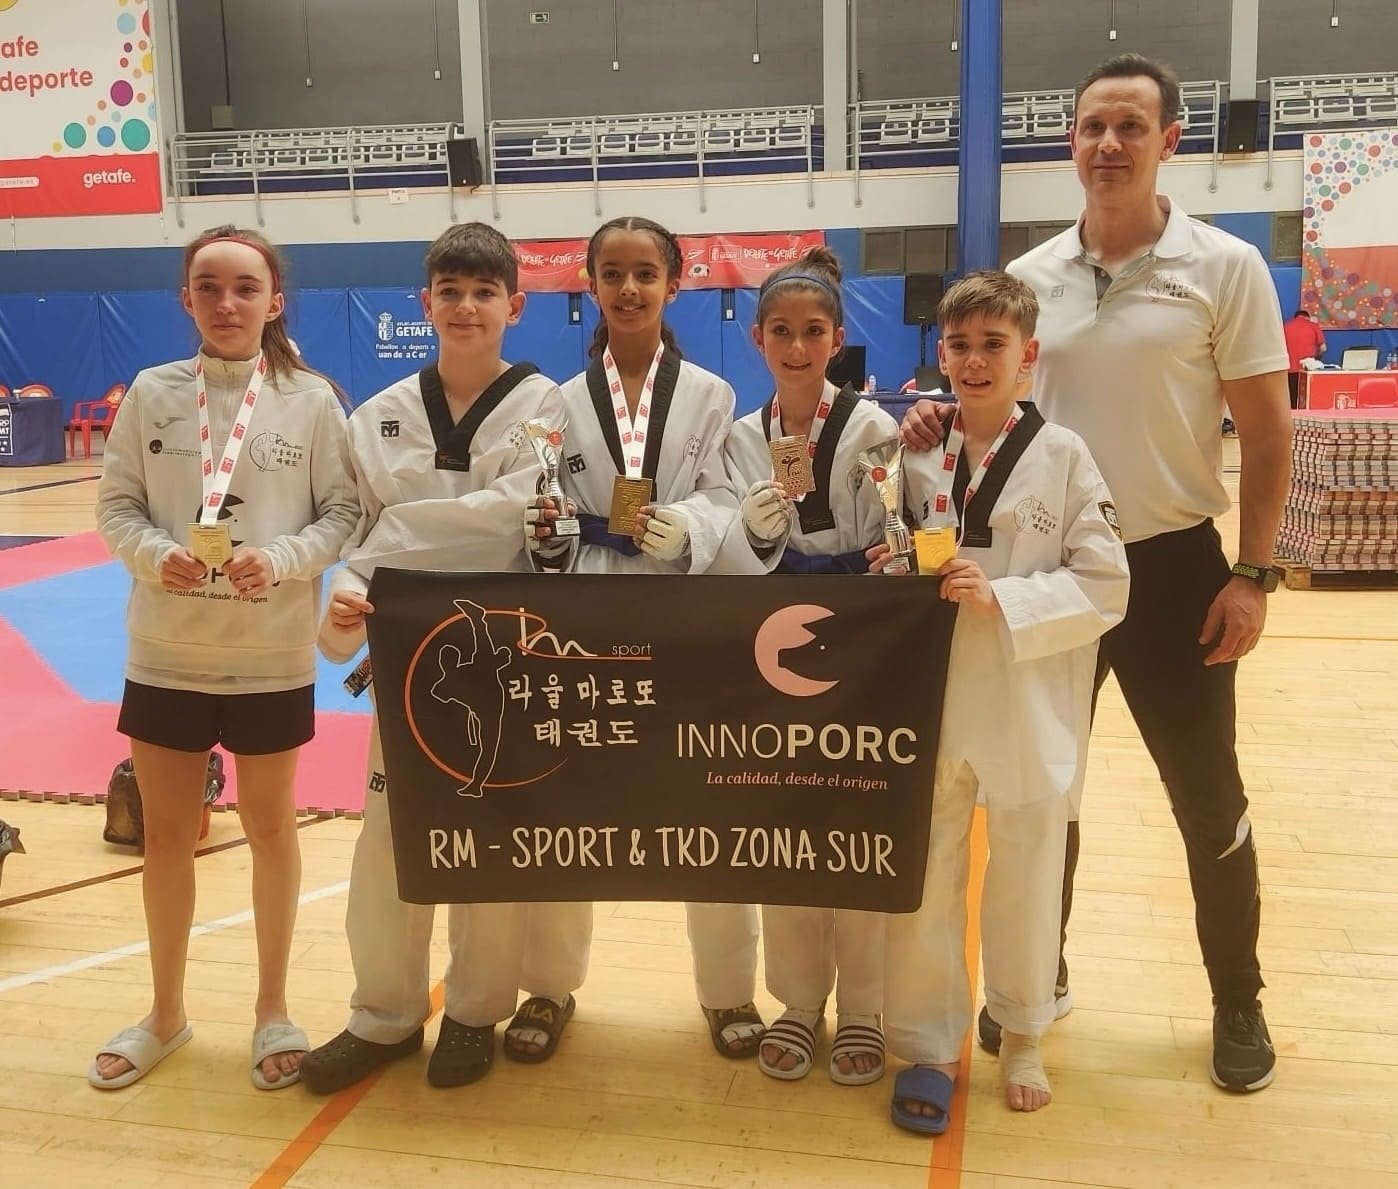 Javier Ruiz y María Lahsseoui clasificados para el Campeonato de España cadete de Taekwondo